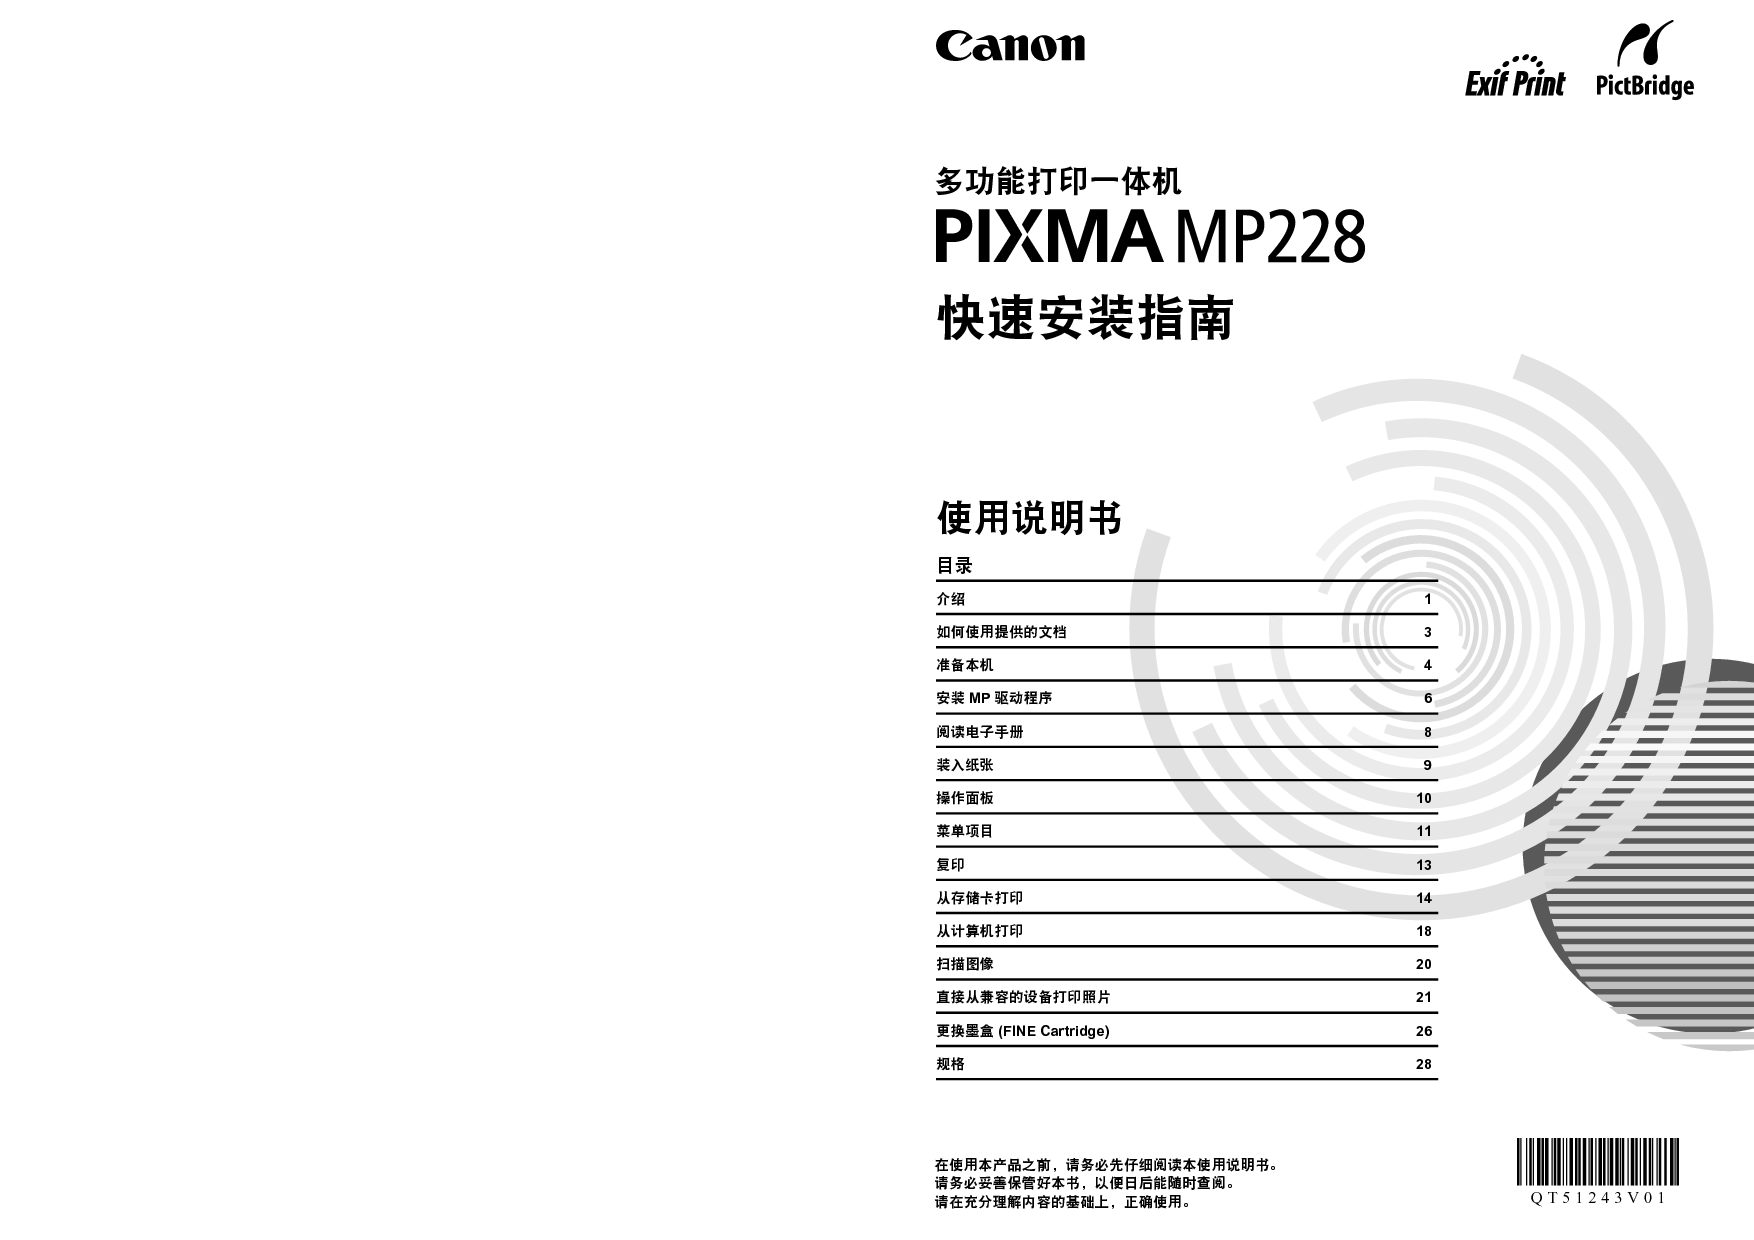 佳能 Canon PIXMA MP228 入门指南 封面